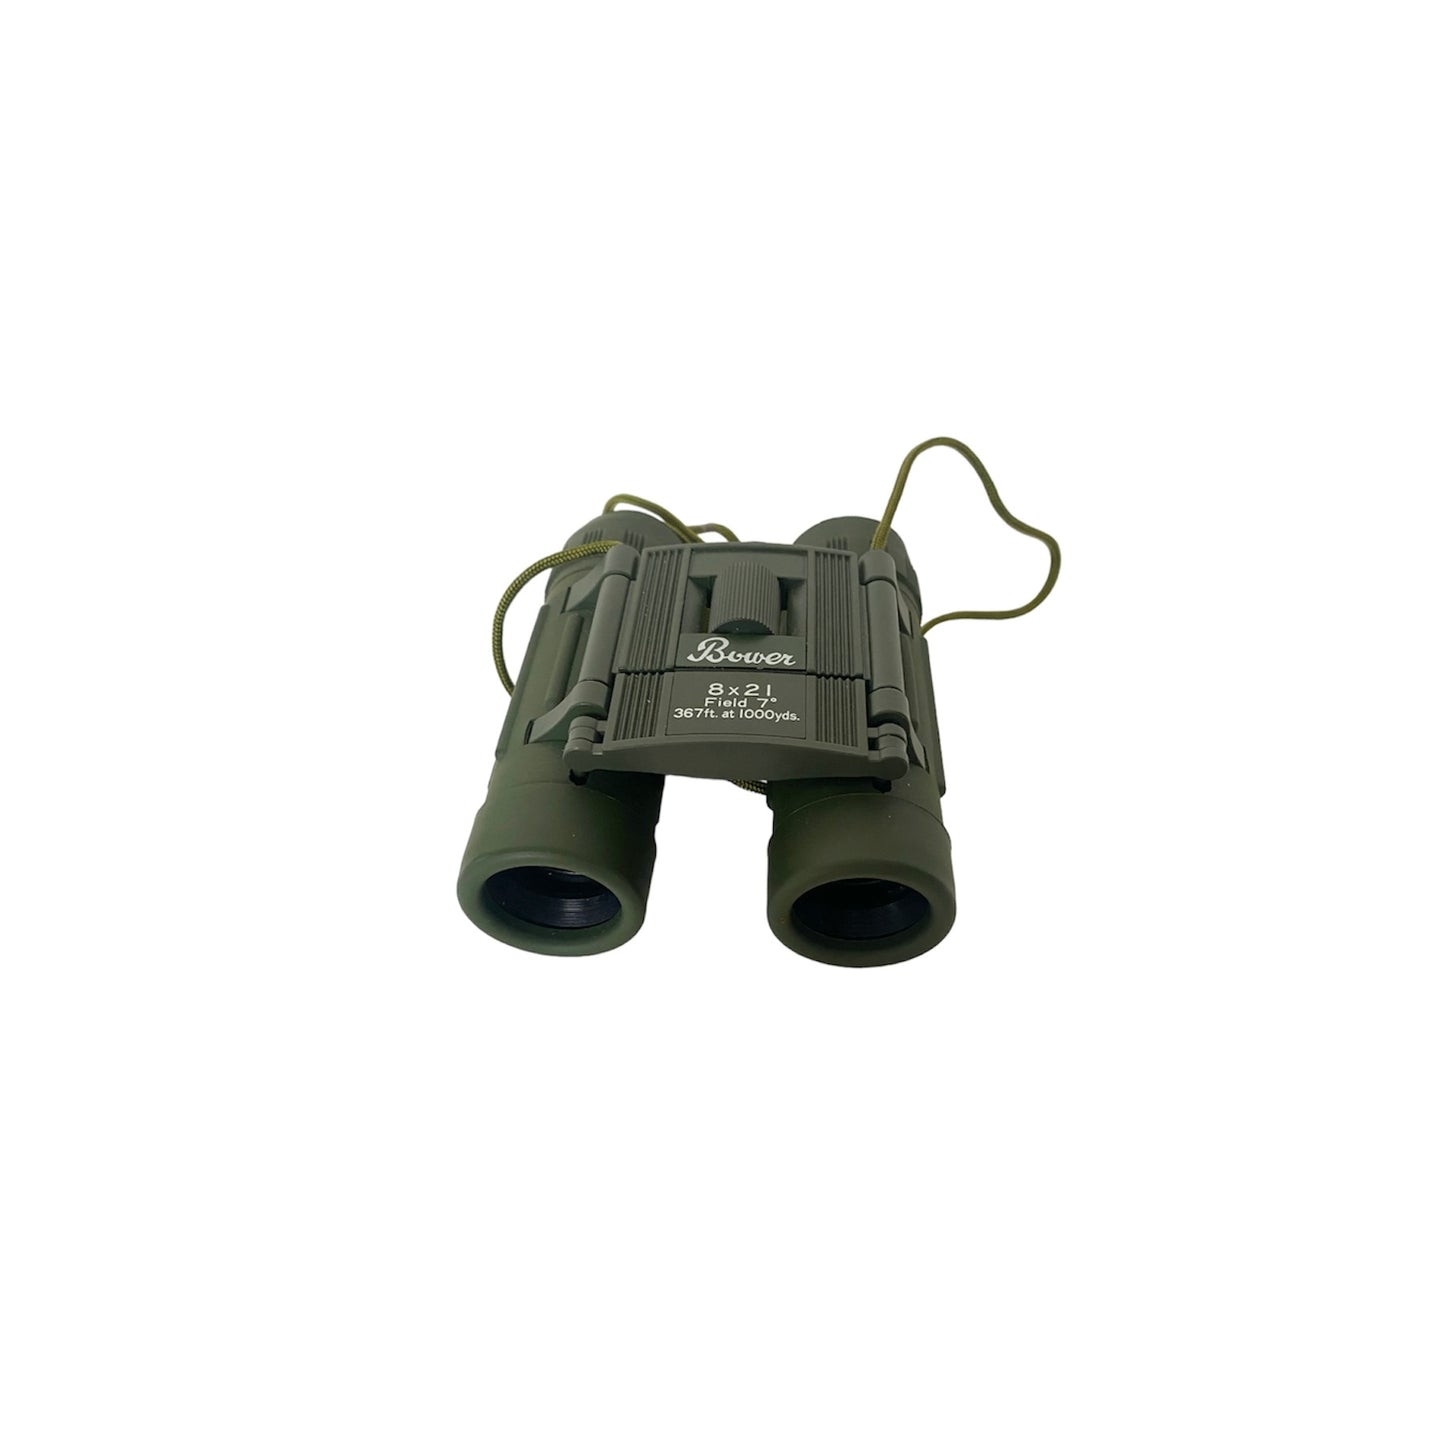 Vintage 8x21 Waterproof Binoculars Made in Japan